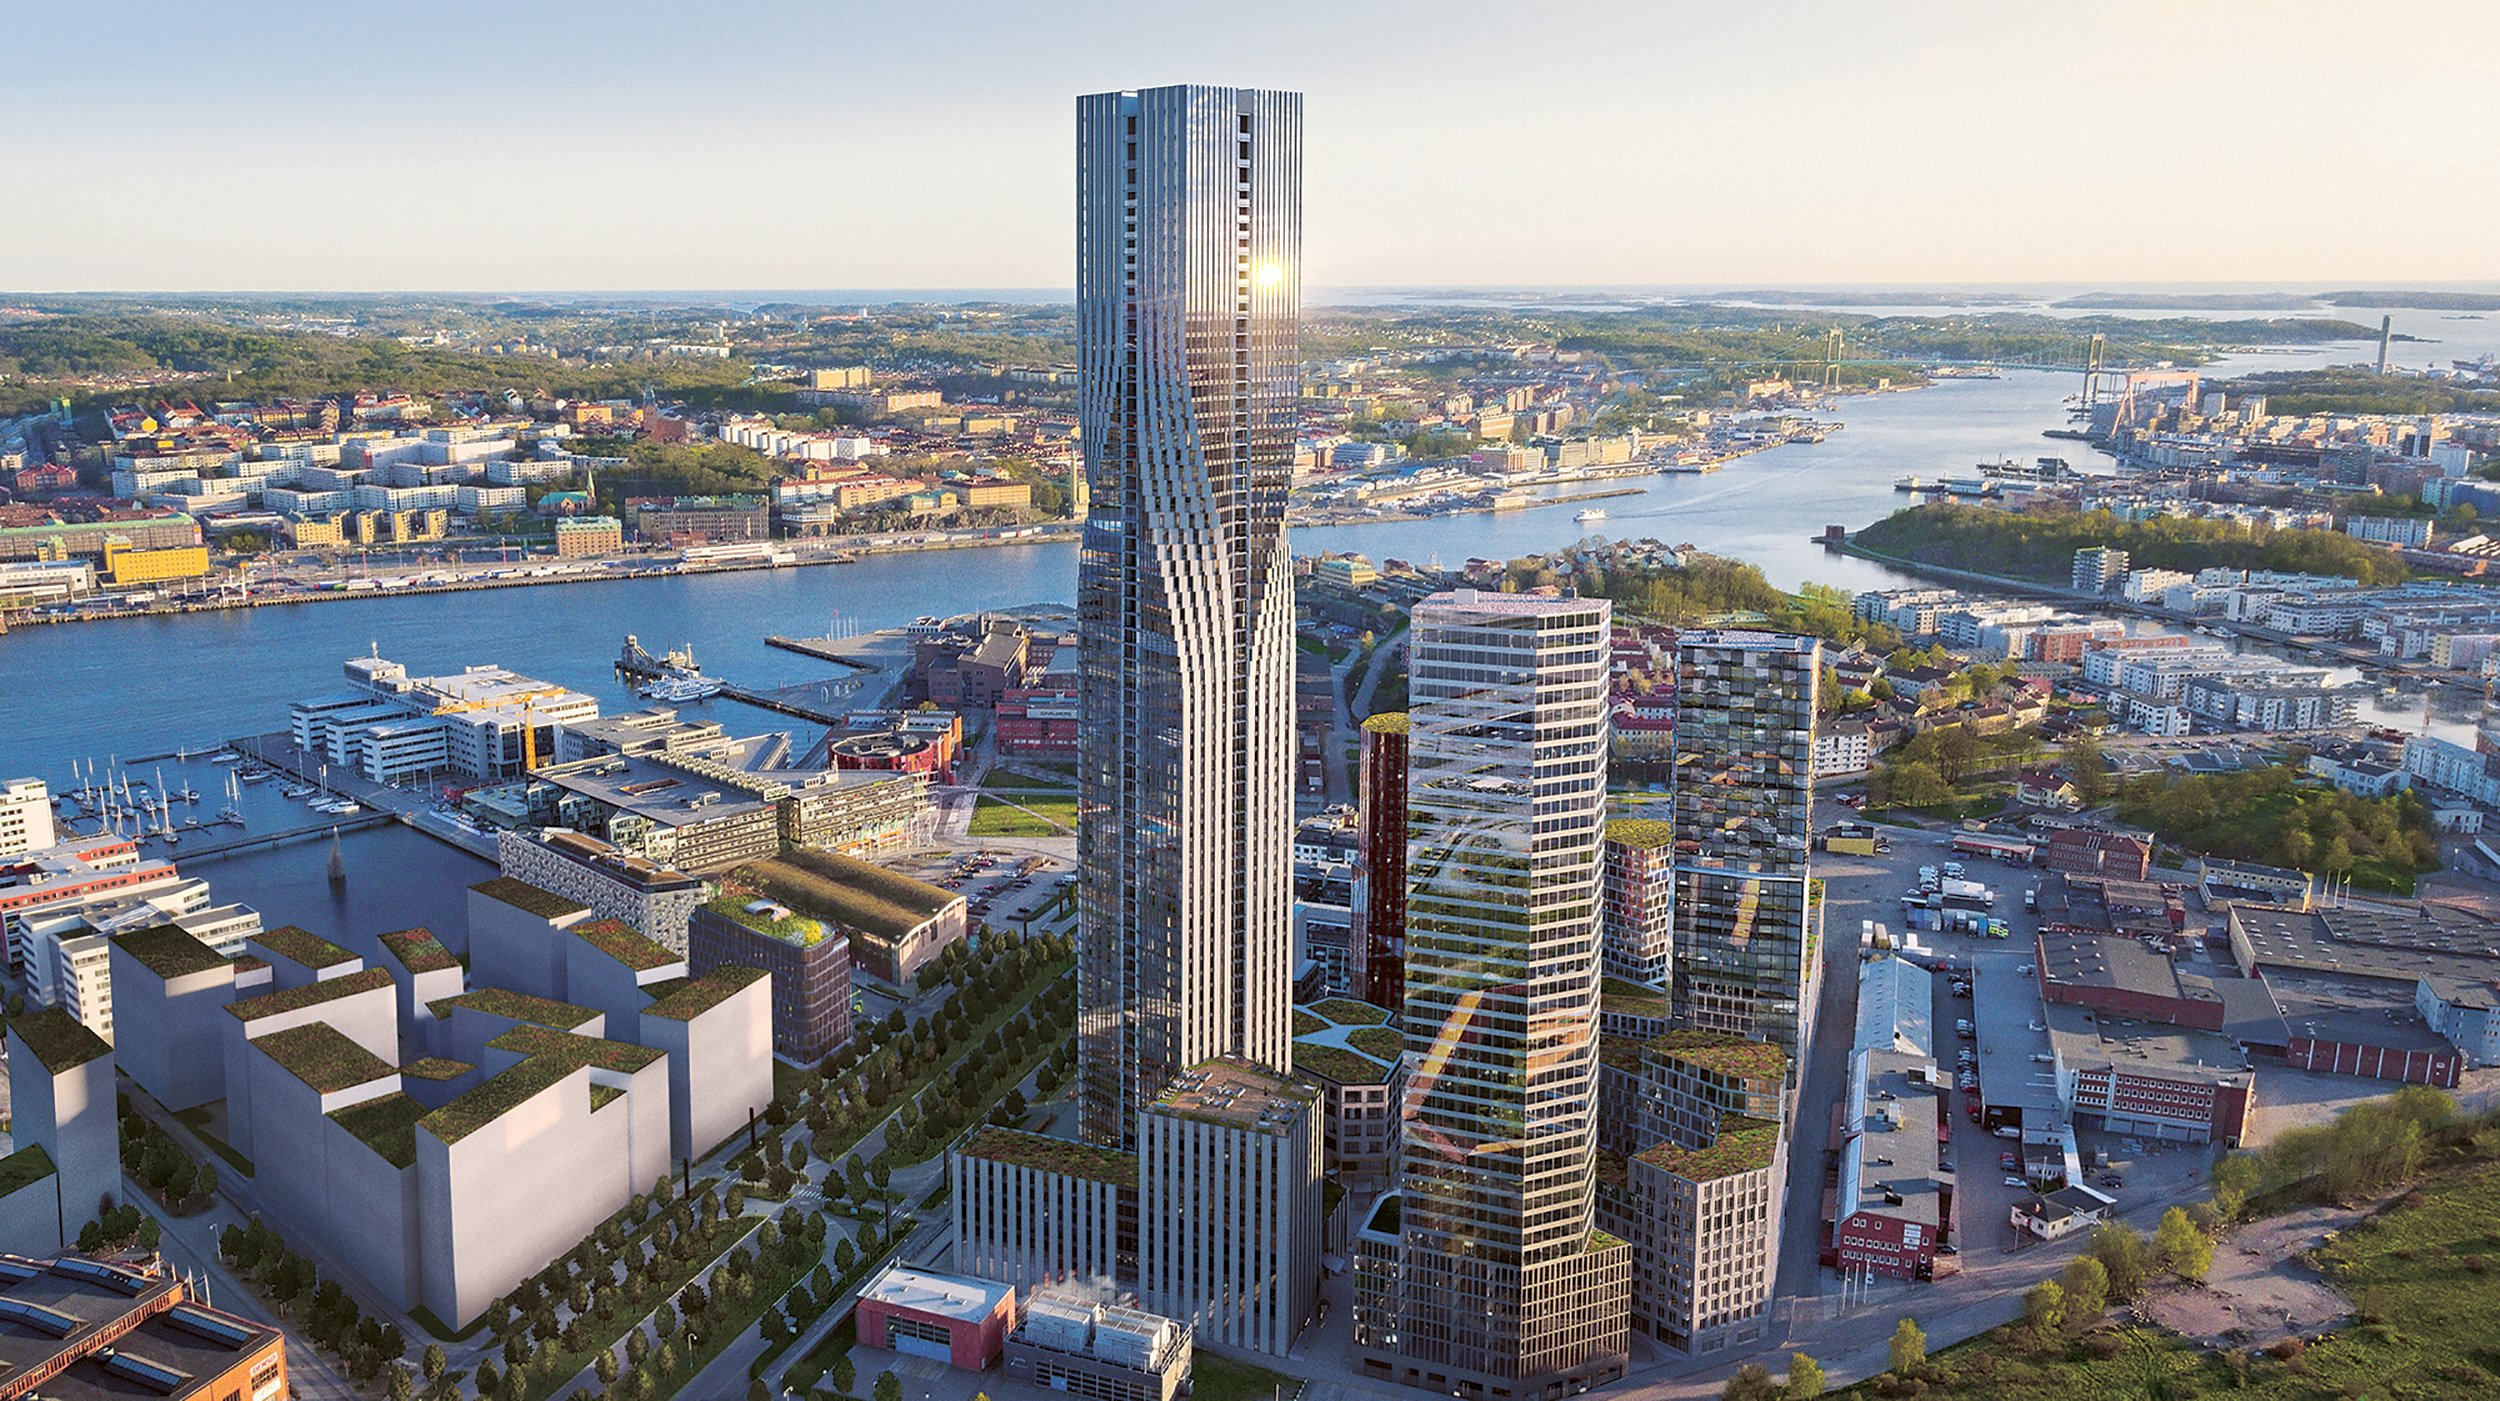 Hohe Glasgebäude überragen eine moderne Stadt, die an einen nahegelegenen Hafen grenzt